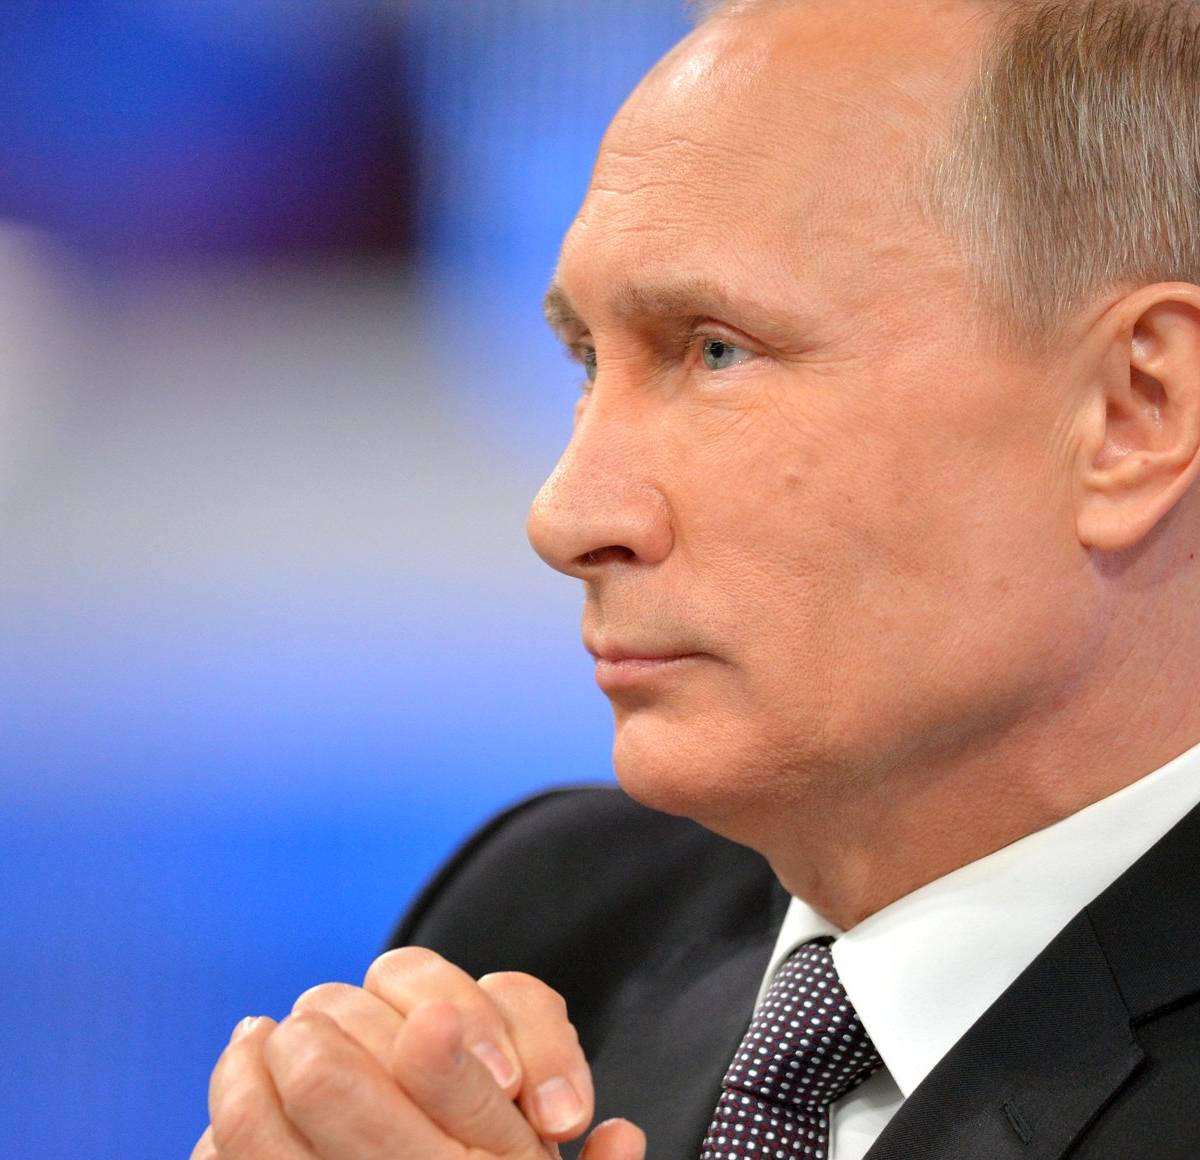 Не дразните хрюканьем медведя, или как Путин снова «союзников» запугал